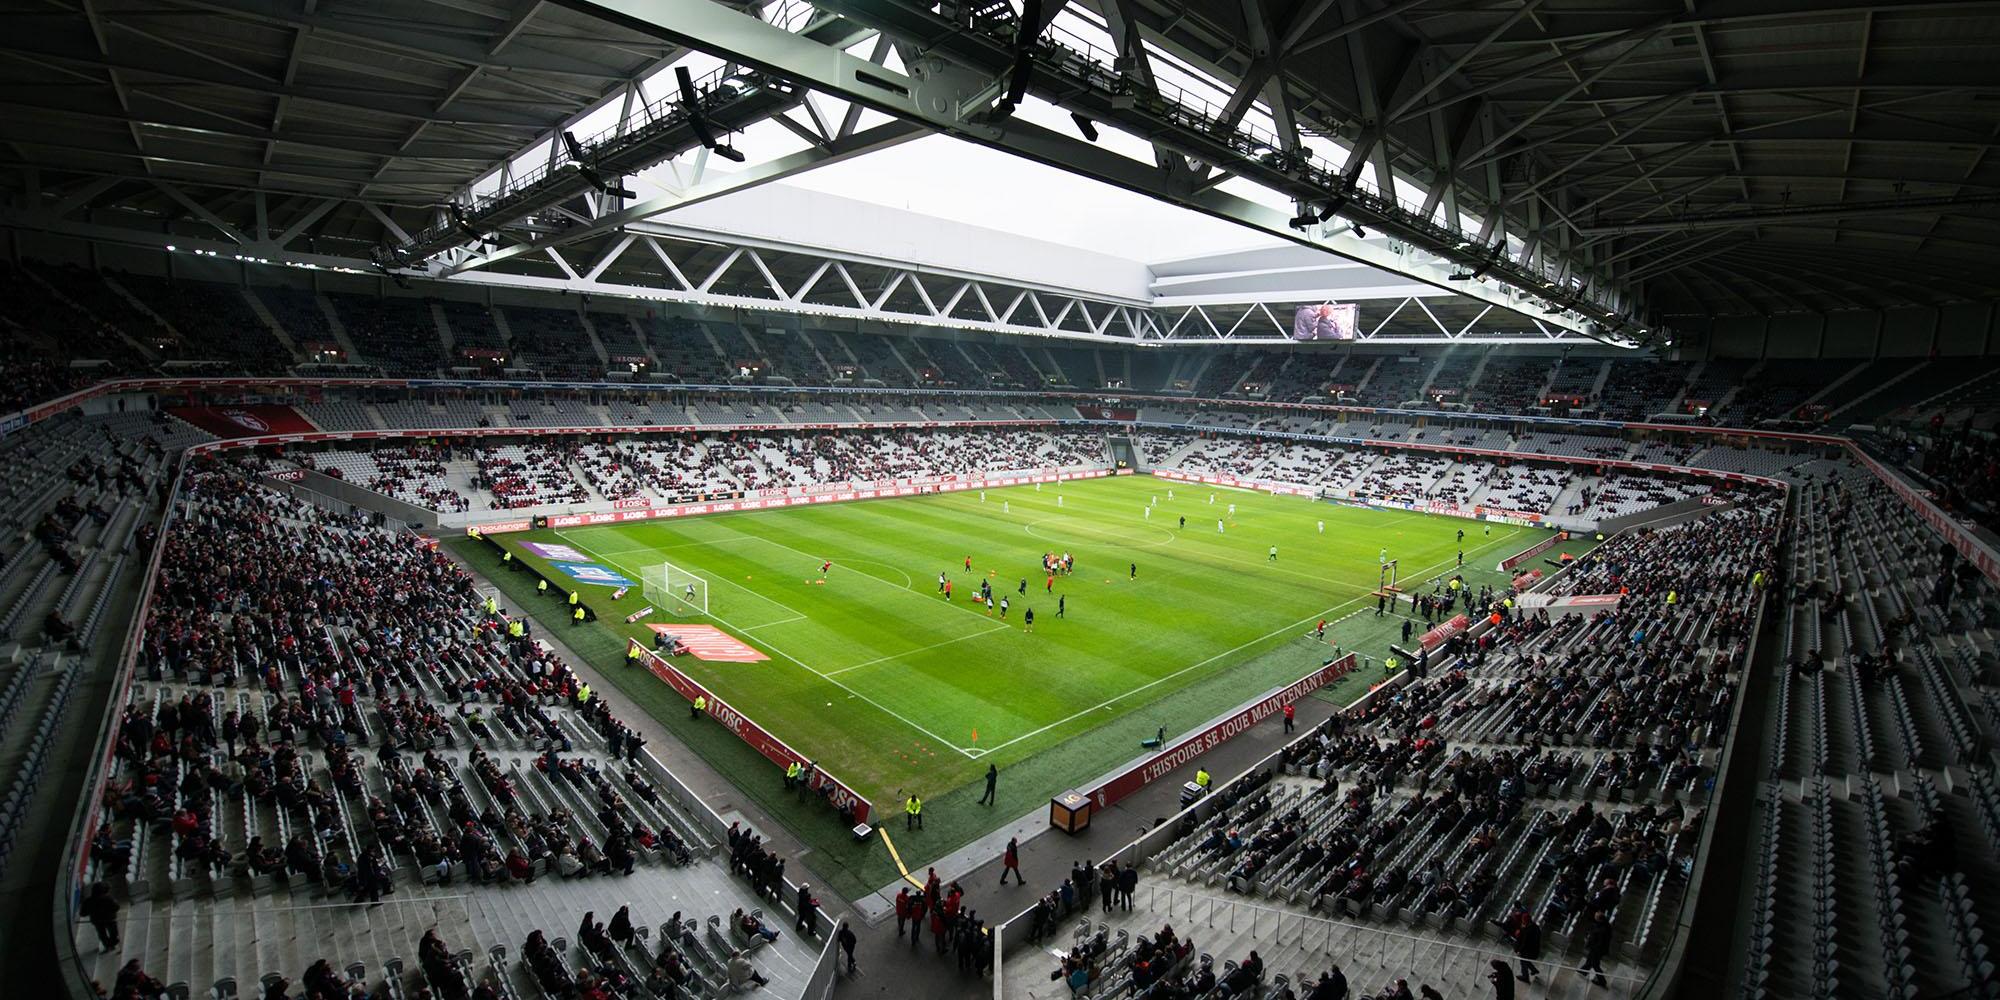 Décathlon Aréna - Stade Pierre Mauroy - Vue intérieure durant un match de foot (agrandir l'image)